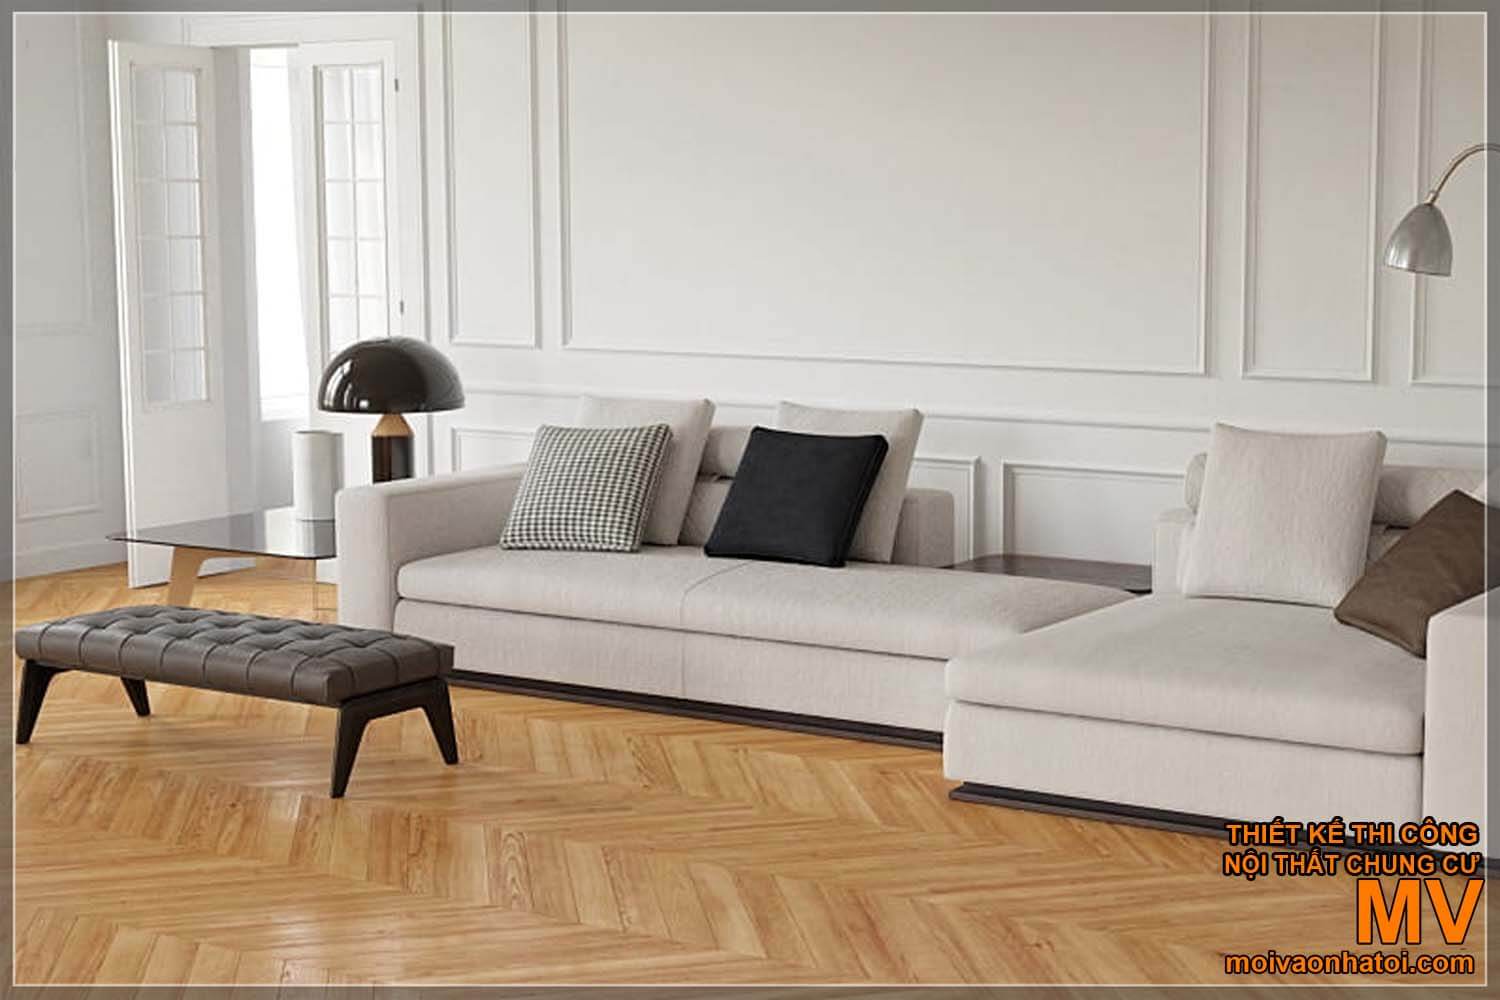 các mẫu ghế sofa hiện đại, đơn giản dành cho nhà tân cổ điển